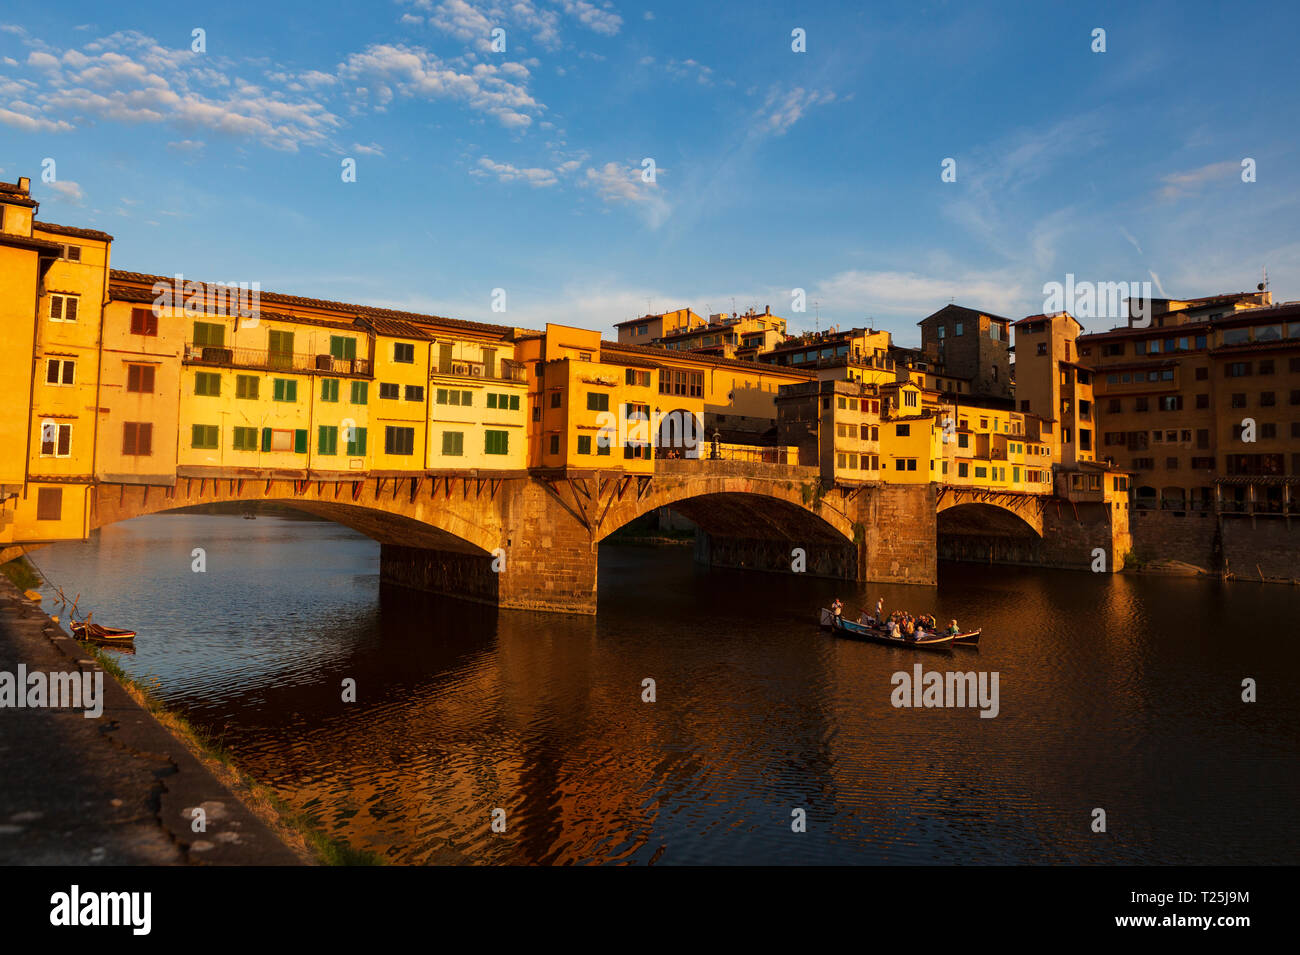 Der Ponte Vecchio, eine mittelalterliche Stein geschlossen - brüstungs Segmentbogen Brücke über den Fluss Arno in Florenz, Italien, bekannt für noch in Läden gebaut Stockfoto